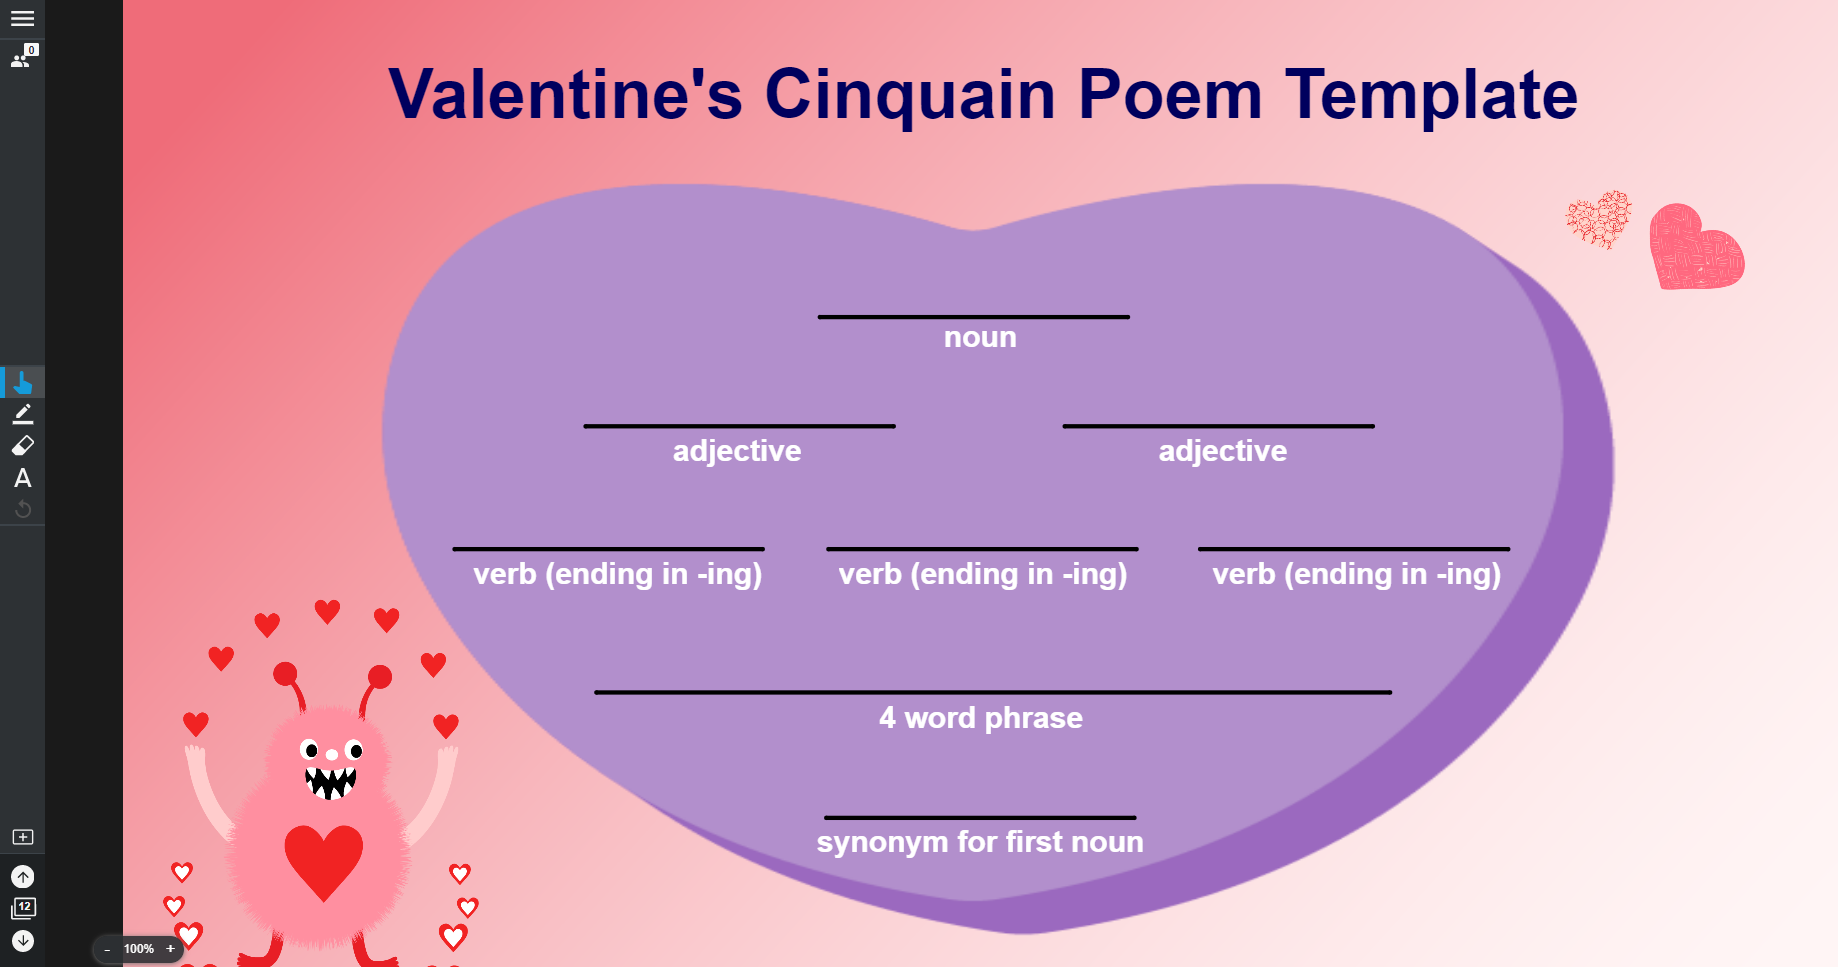 Valentine's Cinquain Poem